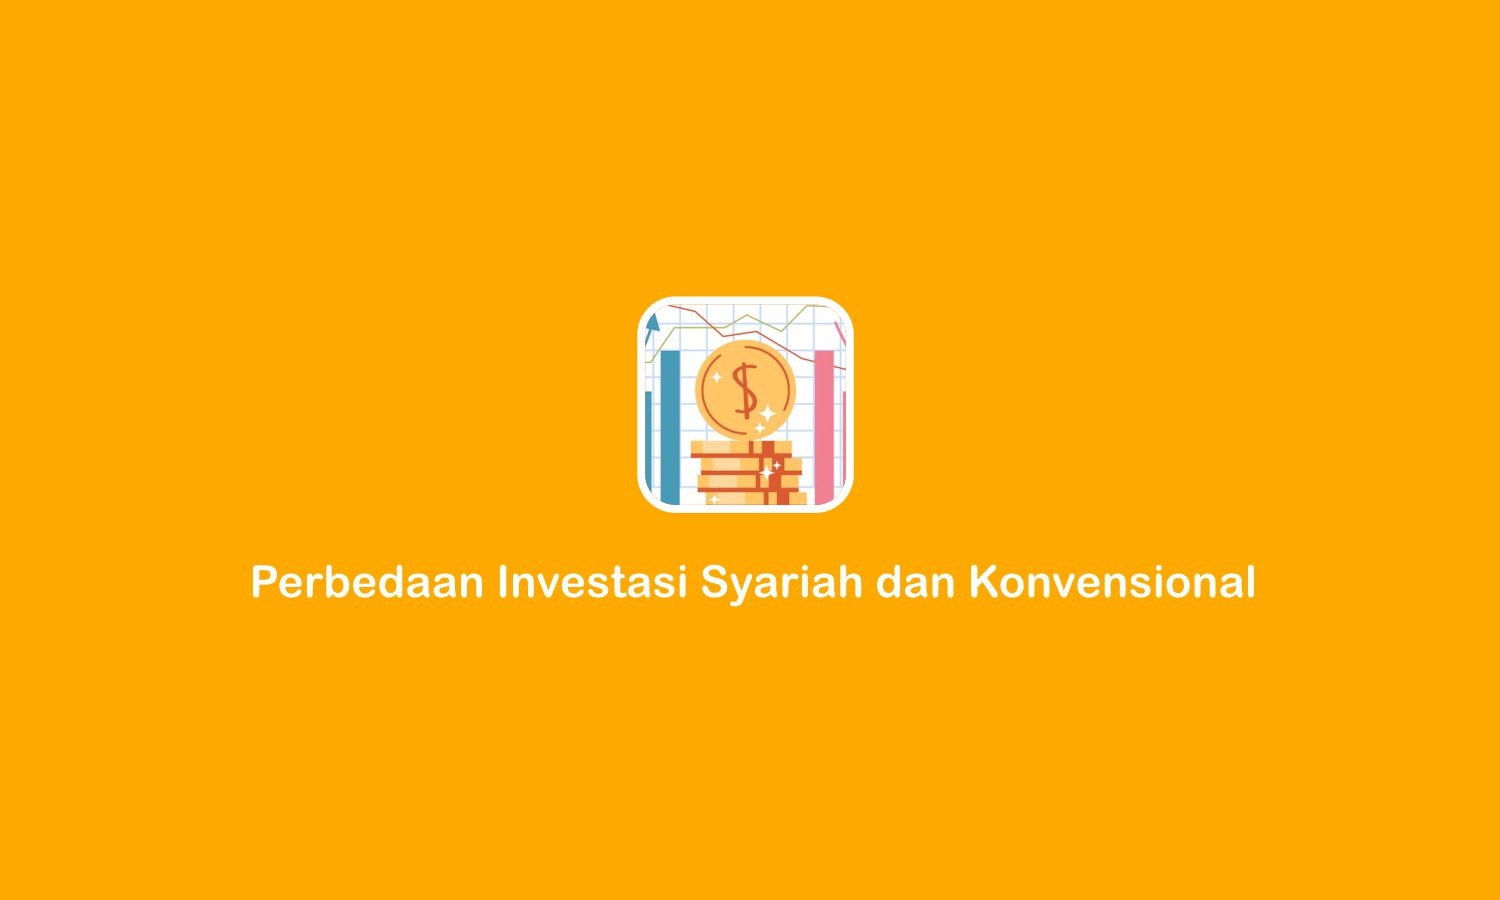 Perbedaan Investasi FinTech Syariah dan Konvensional